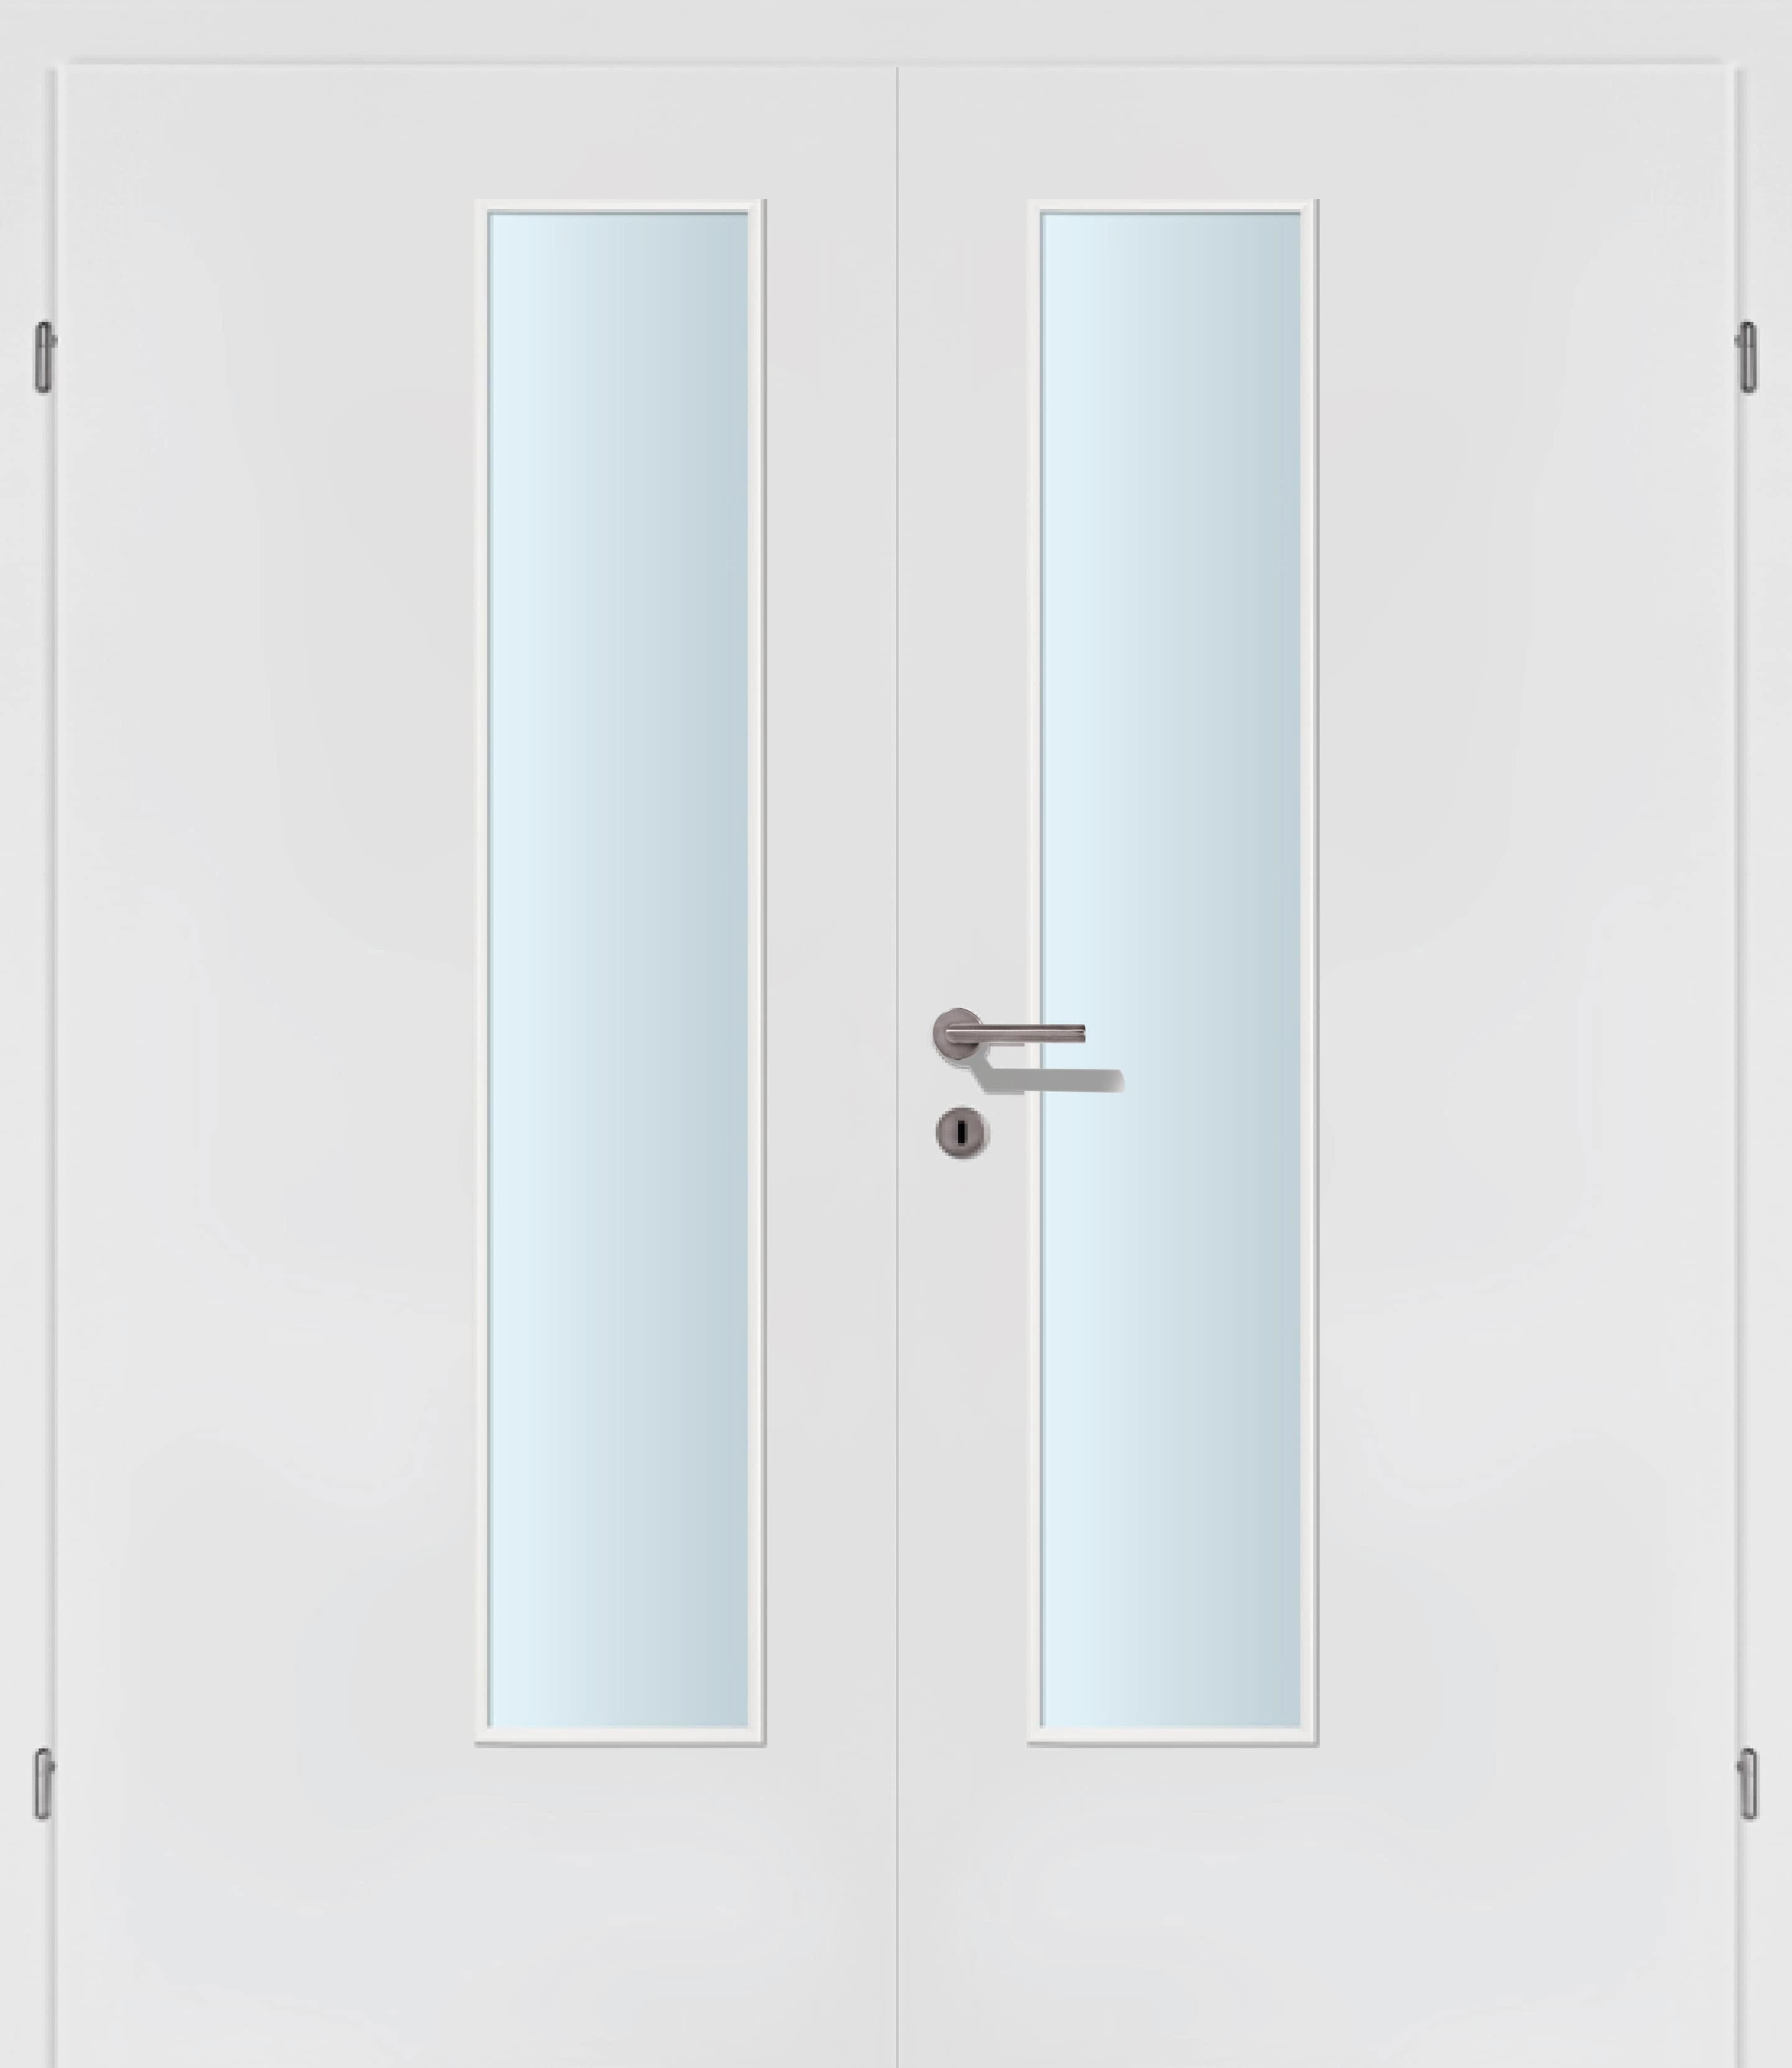 Exklusiv weiss Innentür Inkl. Zarge (Türrahmen) Doppeltüre Inkl. Glaslichte EN Drückerseitig